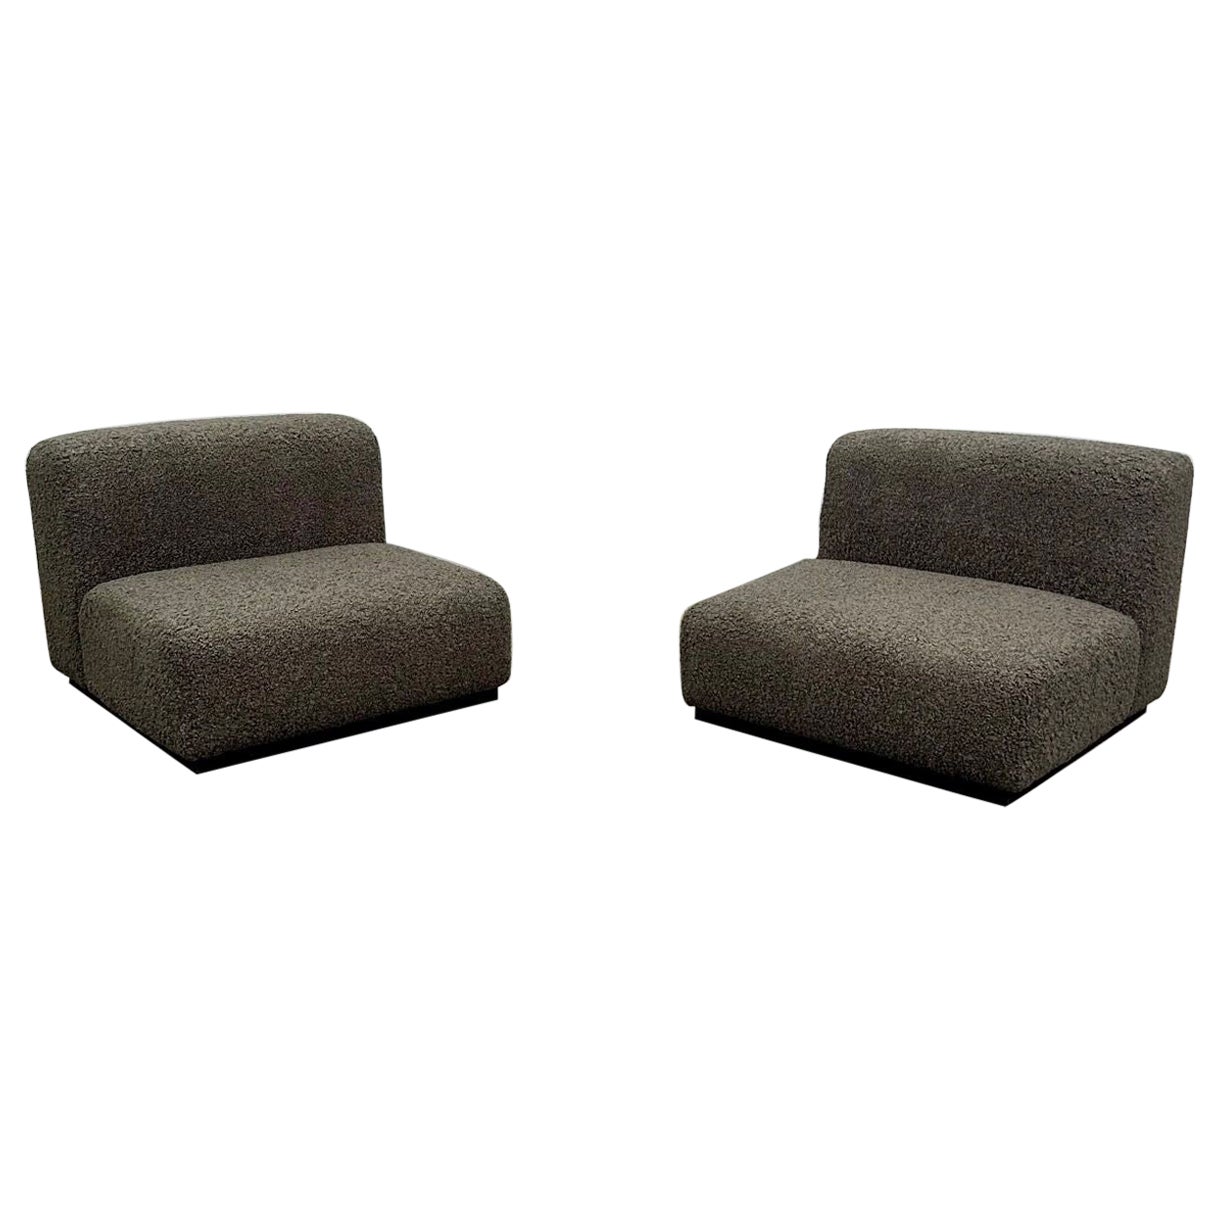 Paire de chaises longues / pantoufles Stendig modernes du milieu du siècle, bouclettes grises